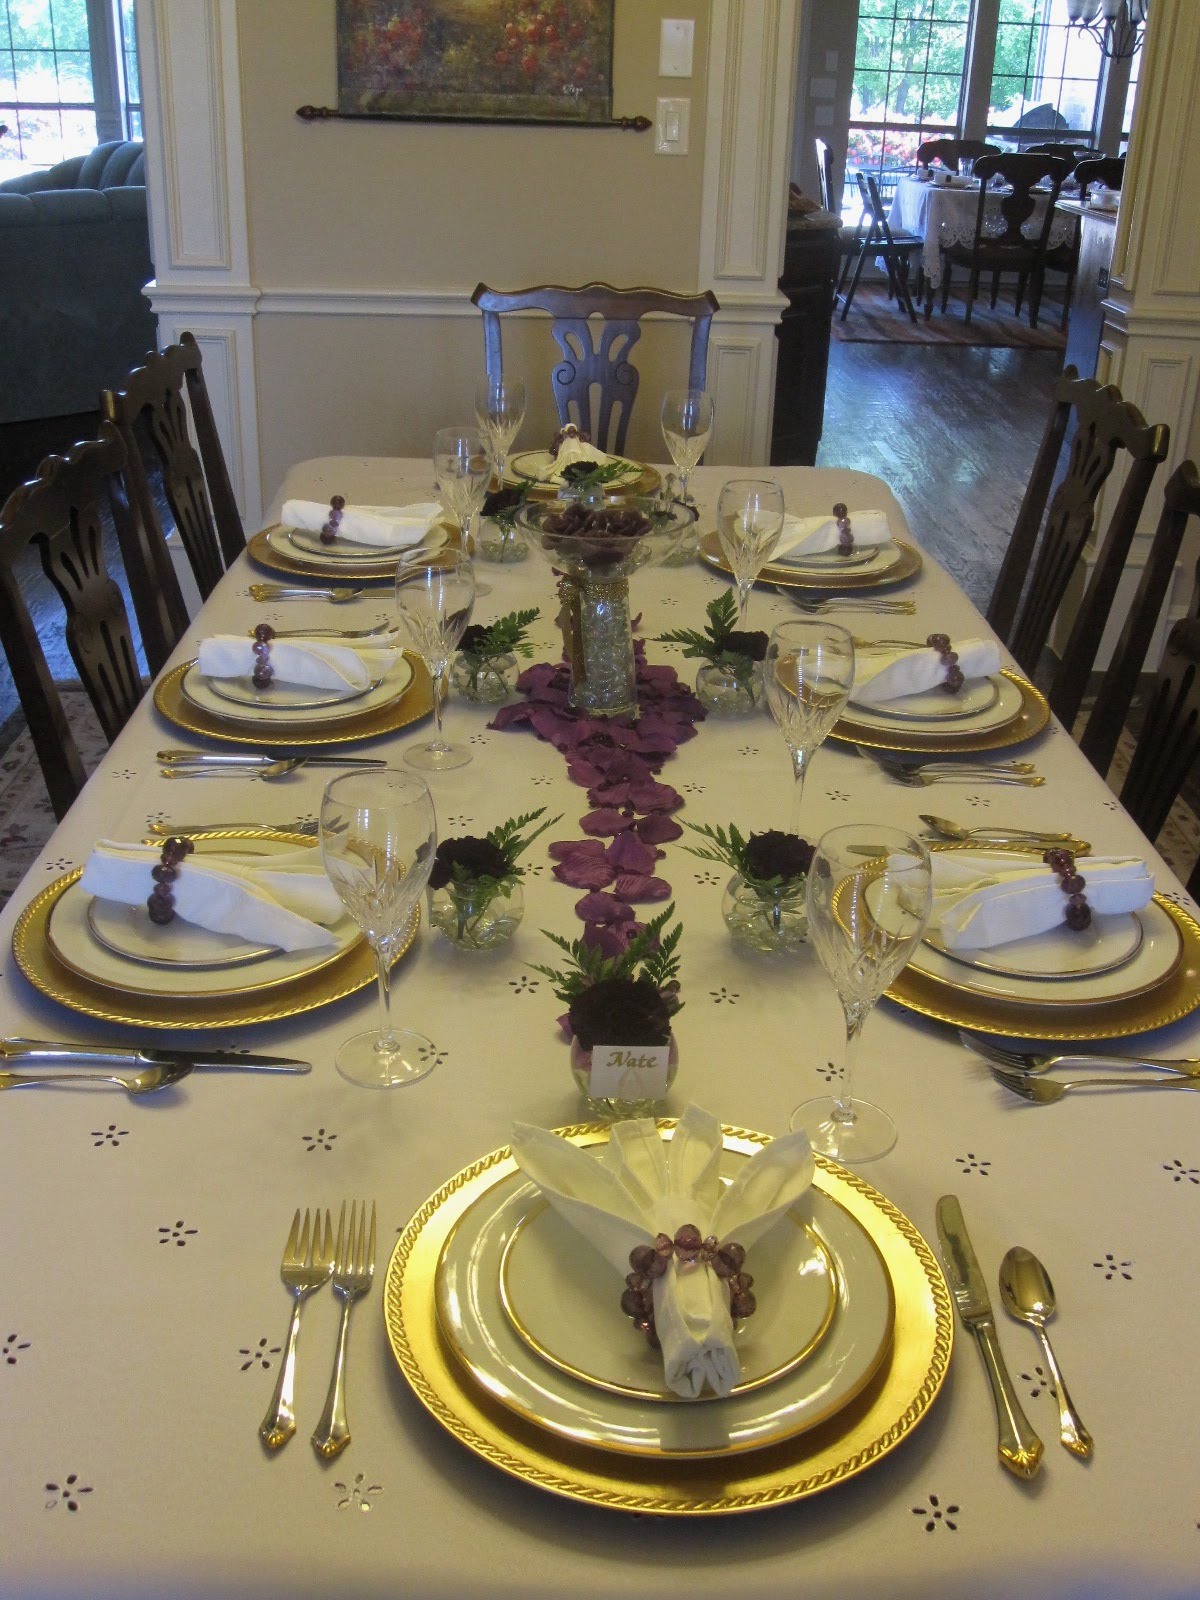 Creative Hospitality: Decorative Dinner Table Setting Ideas